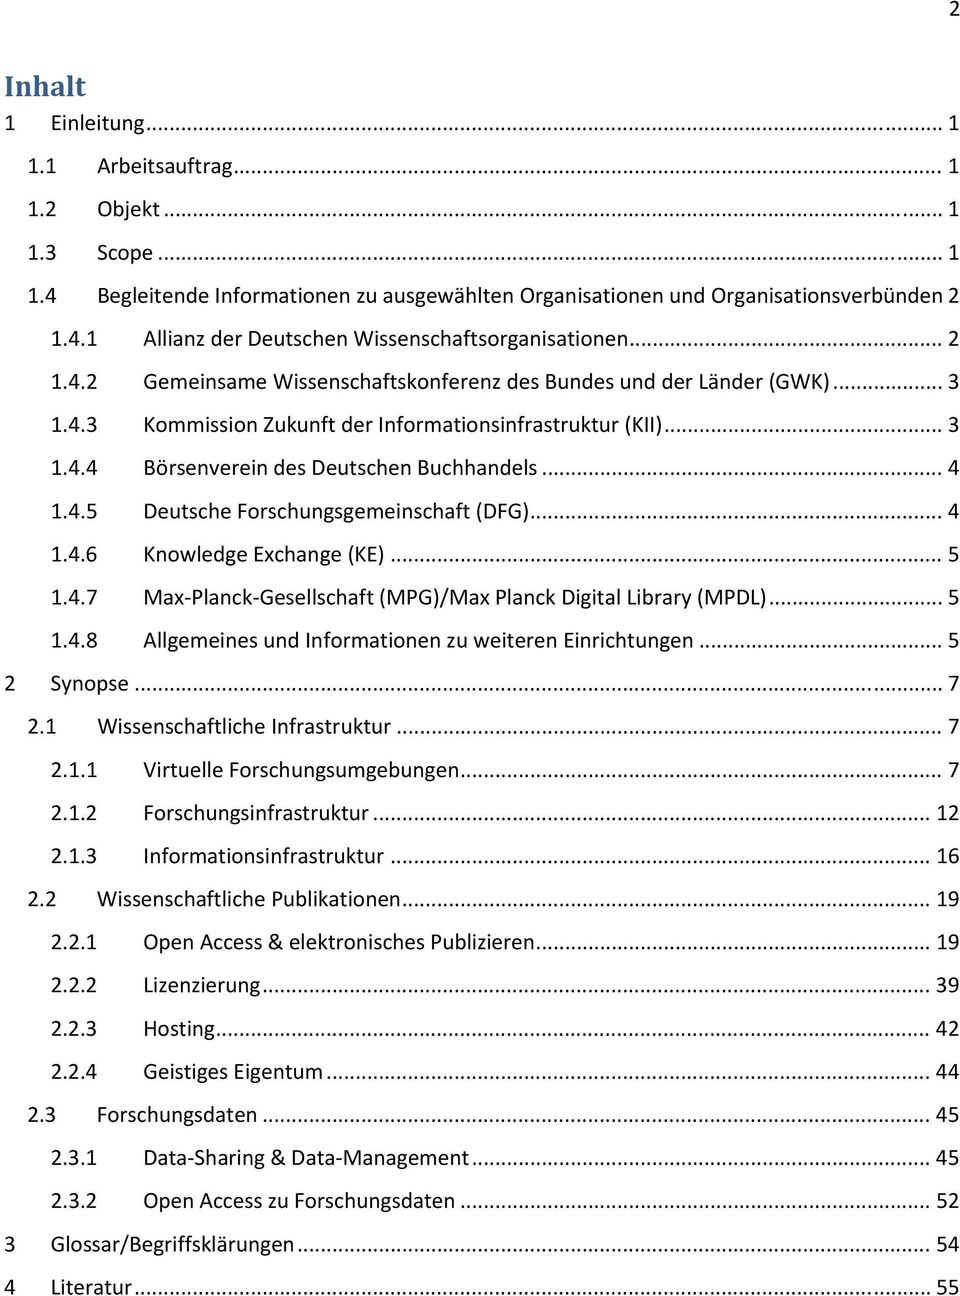 4.5 Deutsche Forschungsgemeinschaft (DFG)... 4 1.4.6 Knowledge Exchange (KE)... 5 1.4.7 Max Planck Gesellschaft (MPG)/Max Planck Digital Library (MPDL)... 5 1.4.8 Allgemeines und Informationen zu weiteren Einrichtungen.